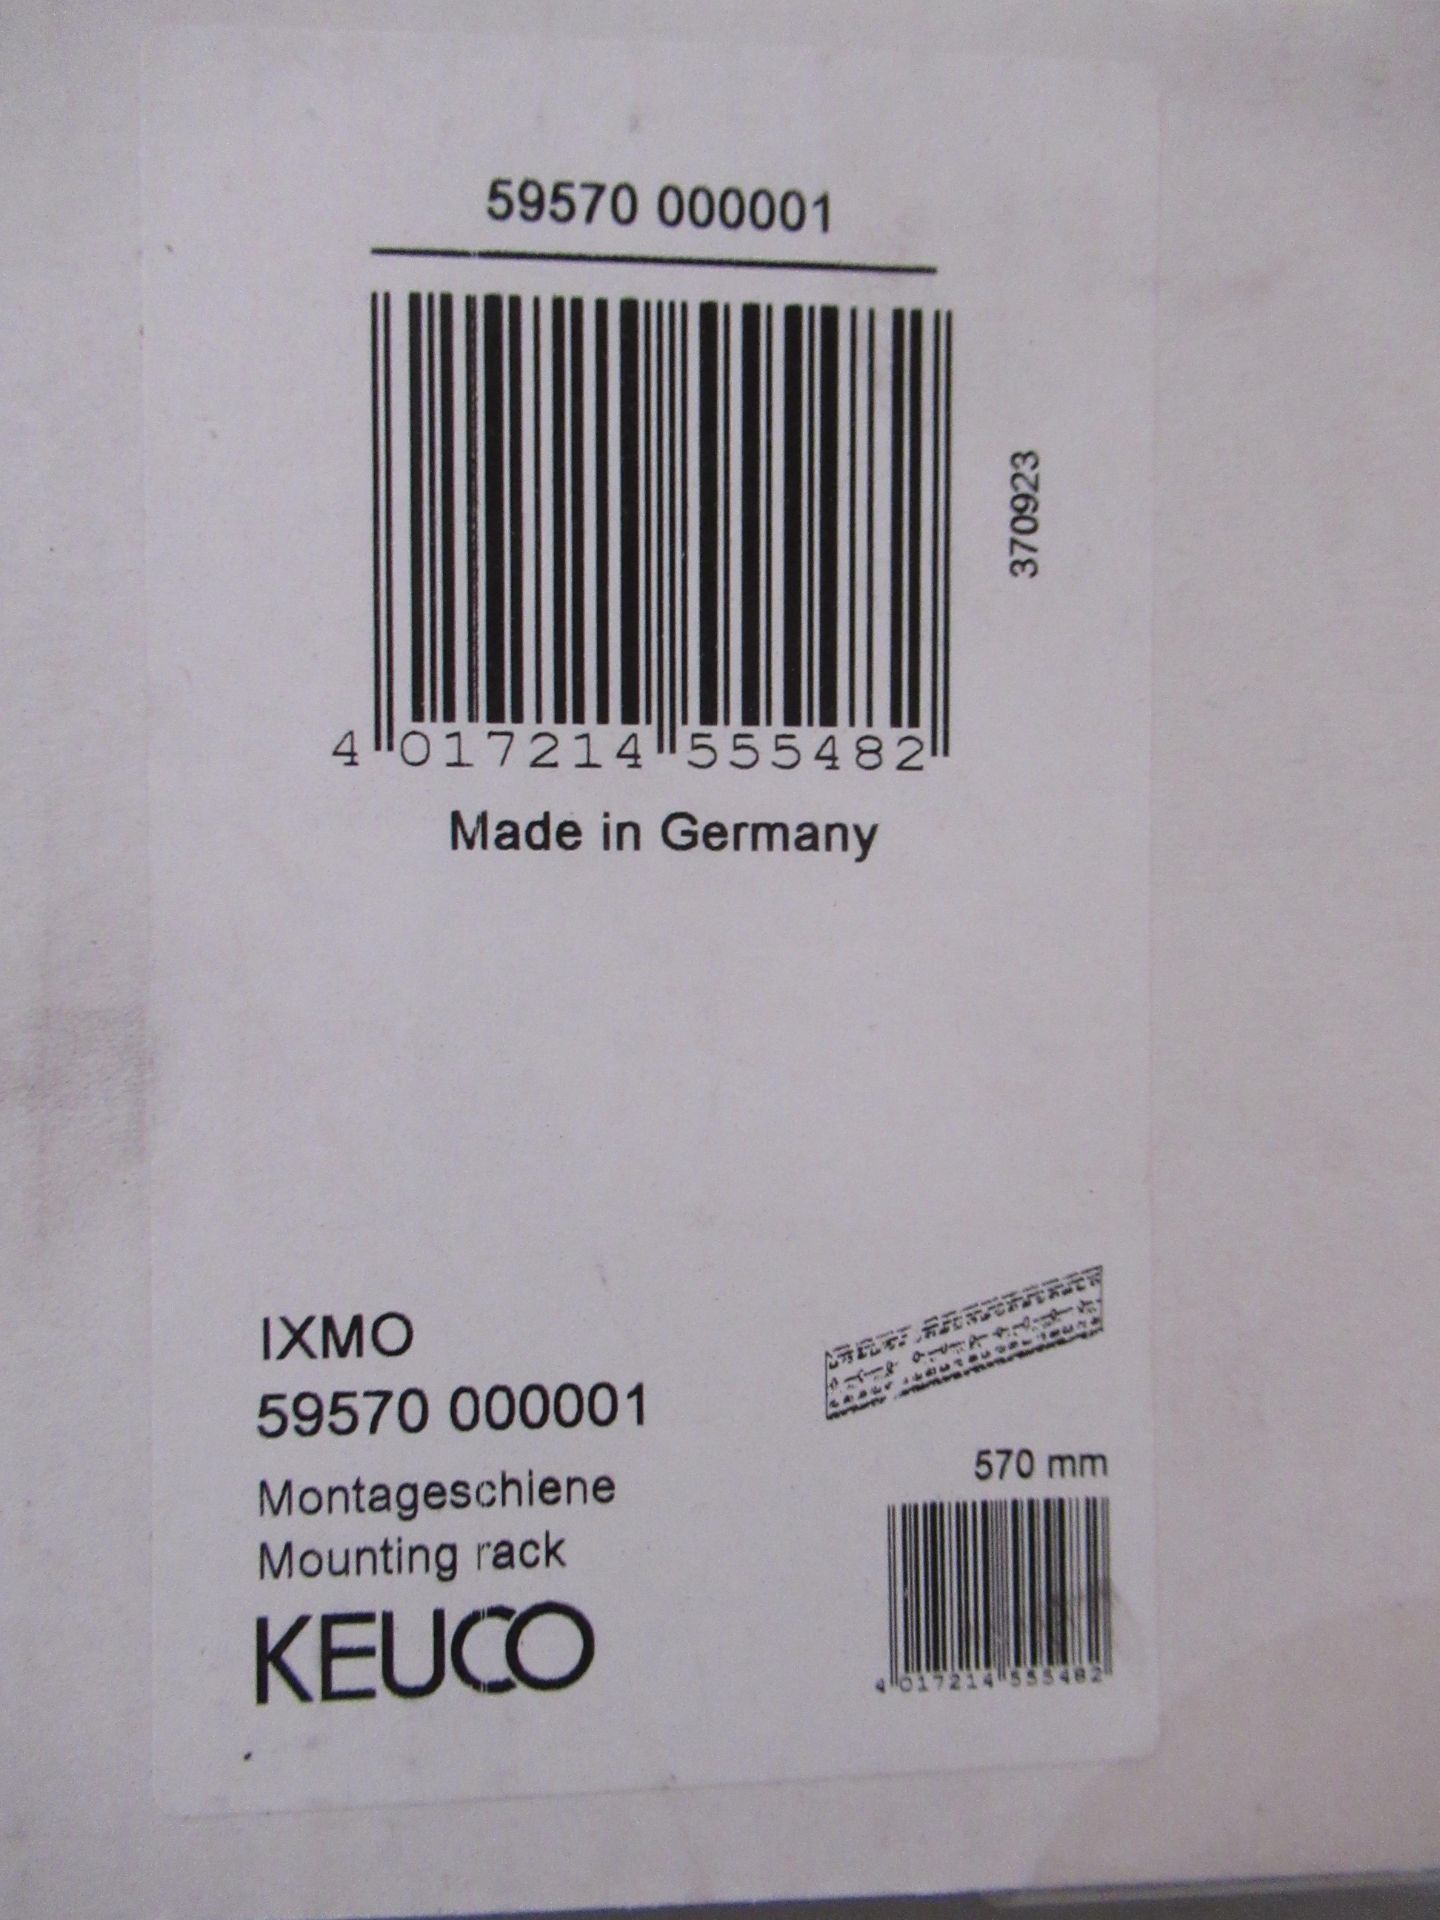 5 x Keuco IXMO Mounting Racks P/N 59570-000002, 1 x Keuco IXMO Mounting Rack P/N 59570-000001 - Image 3 of 3